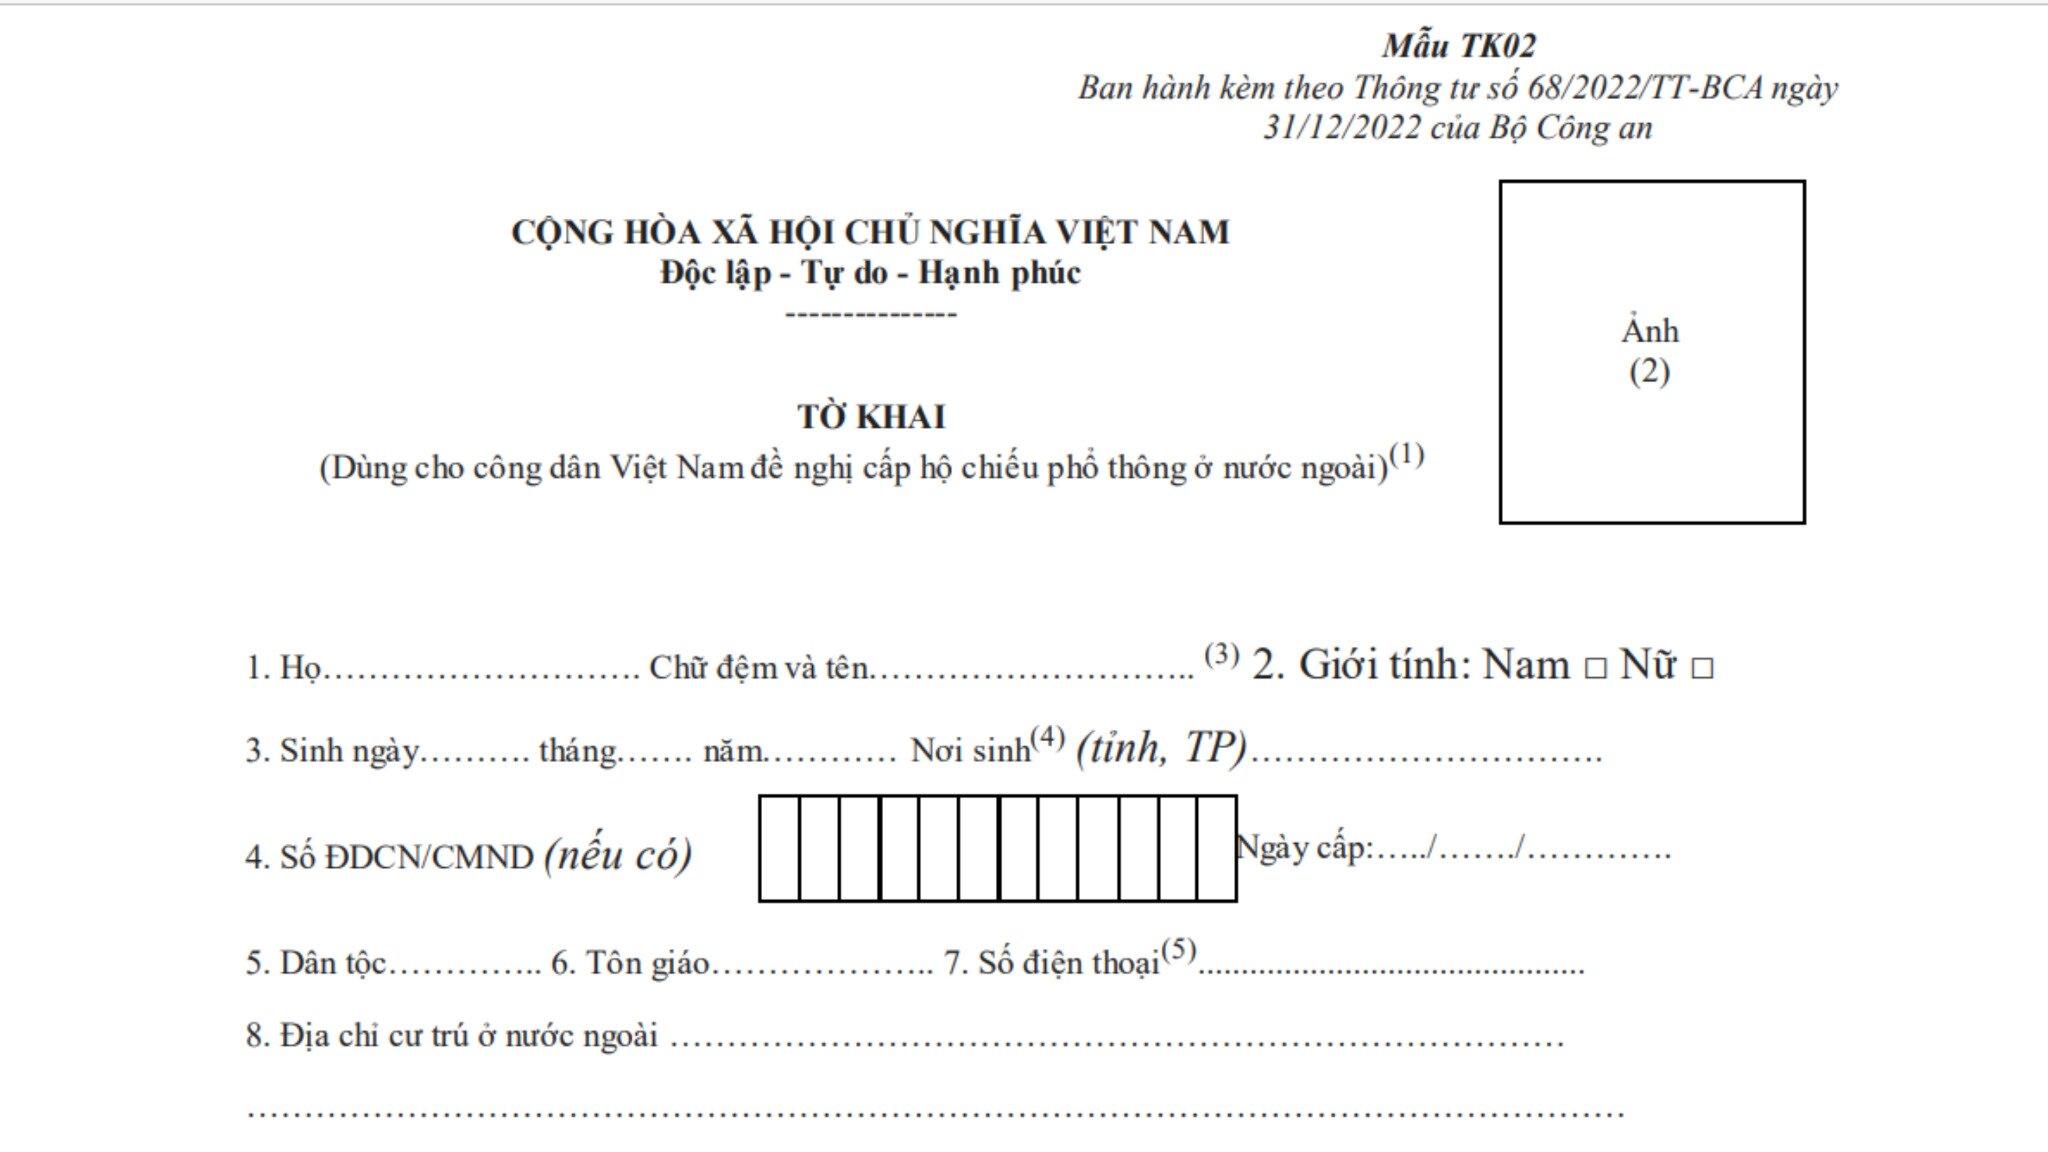 Mẫu tờ khai đề nghị cấp hộ chiếu phổ thông cho công dân Việt Nam nước ngoài mới nhất